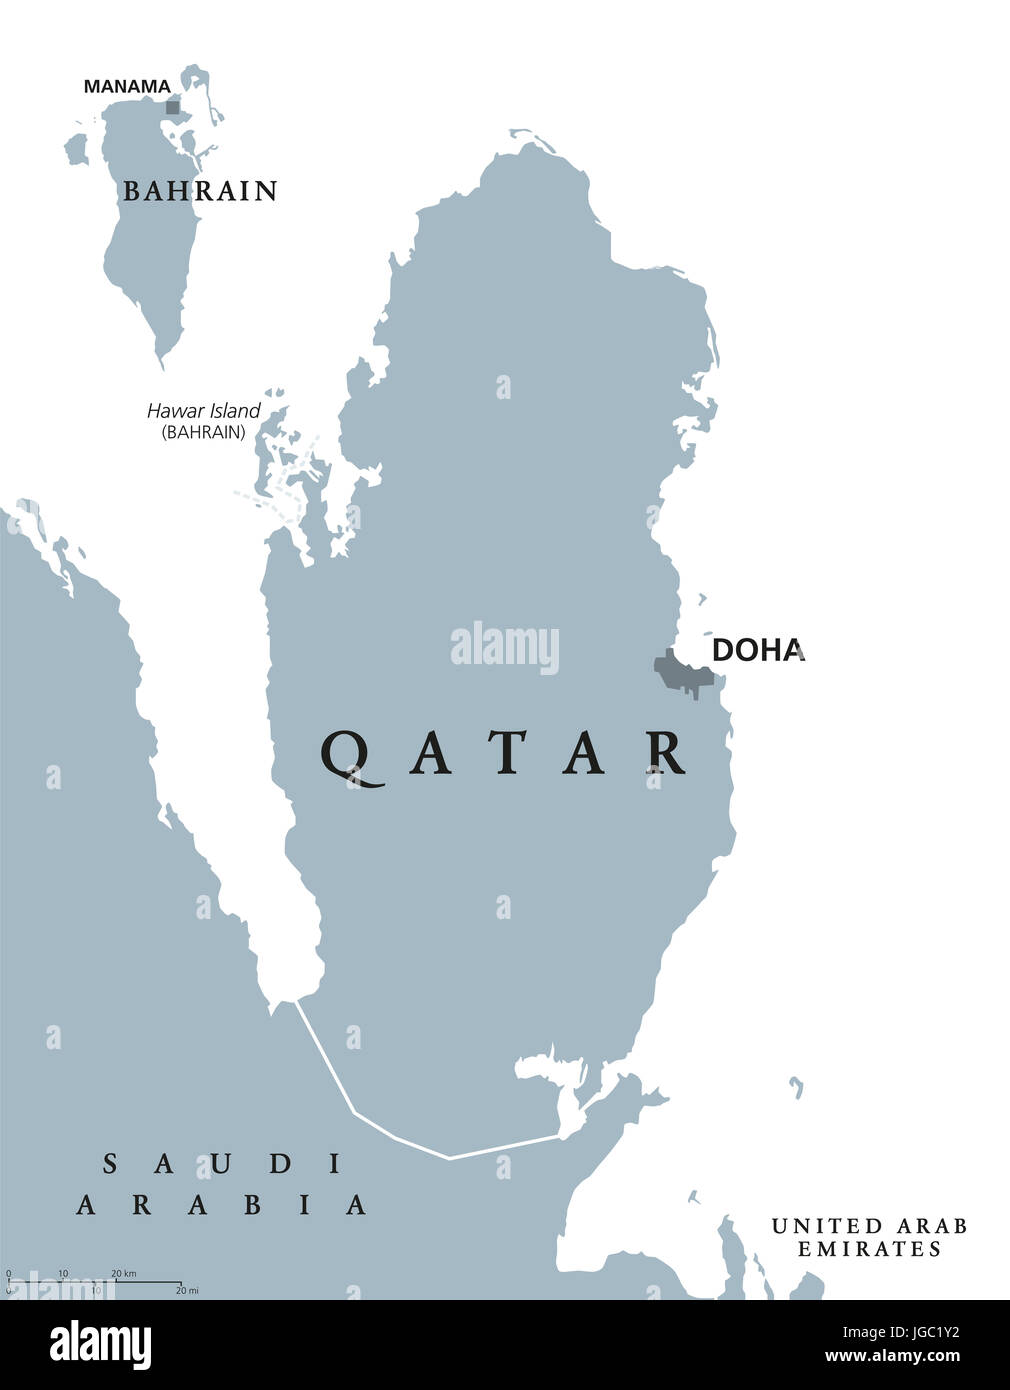 Qatar mappa politico con capitale Doha. Stato e paese sovrano in Asia occidentale sulla costa nord-orientale della penisola arabica. Illustrazione di grigio. Foto Stock